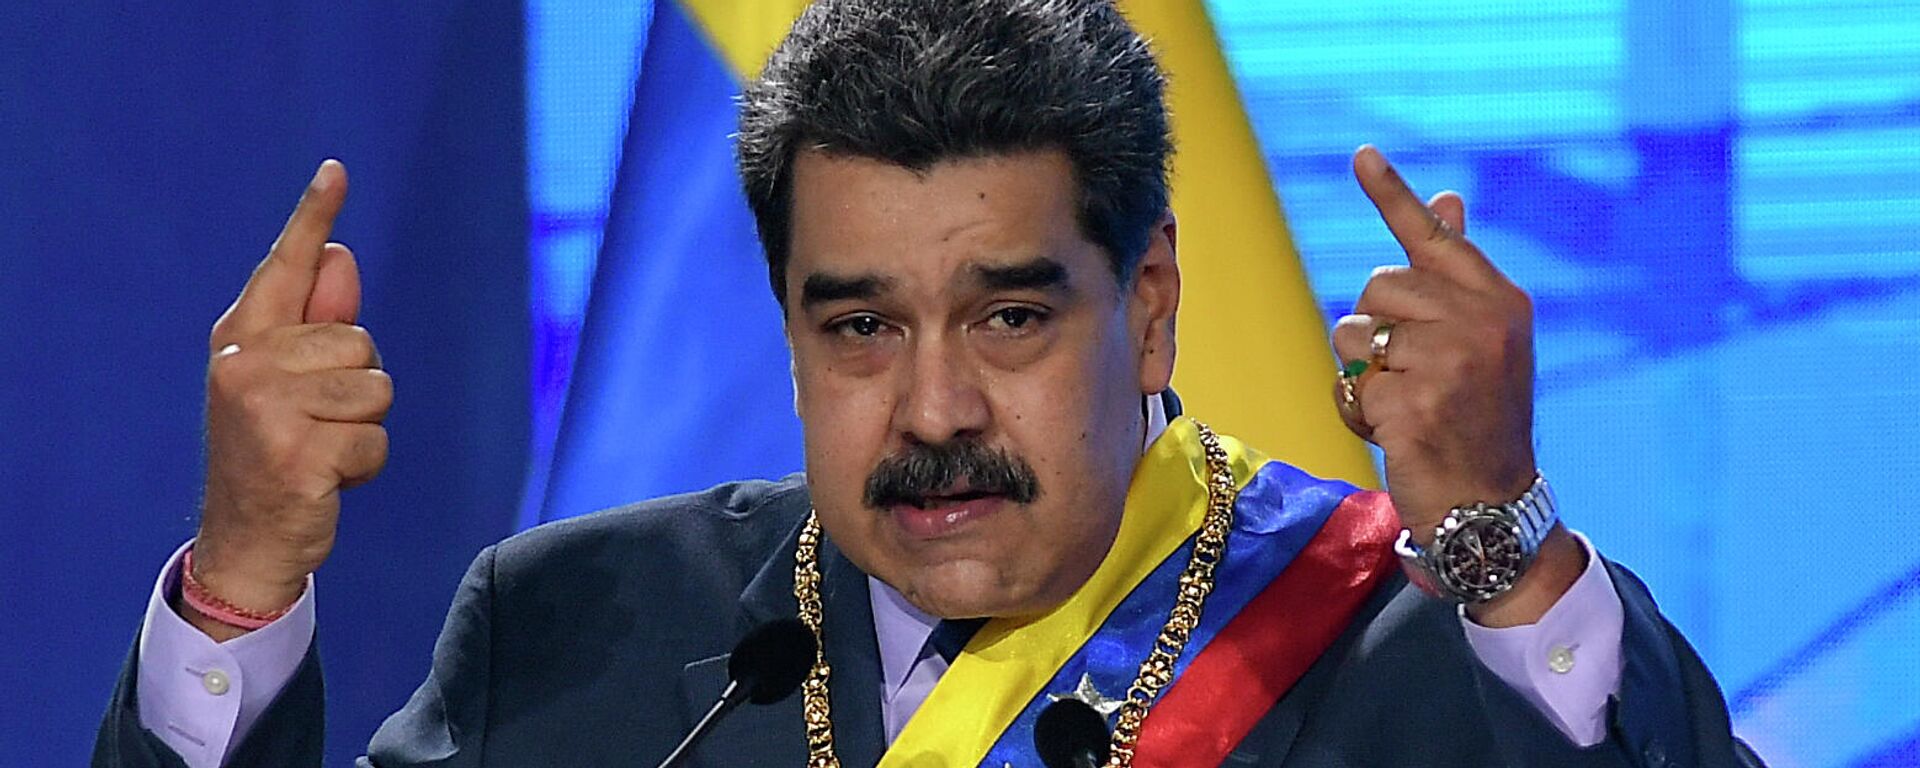 Nicolás Maduro, presidente de Venezuela - Sputnik Mundo, 1920, 08.12.2021